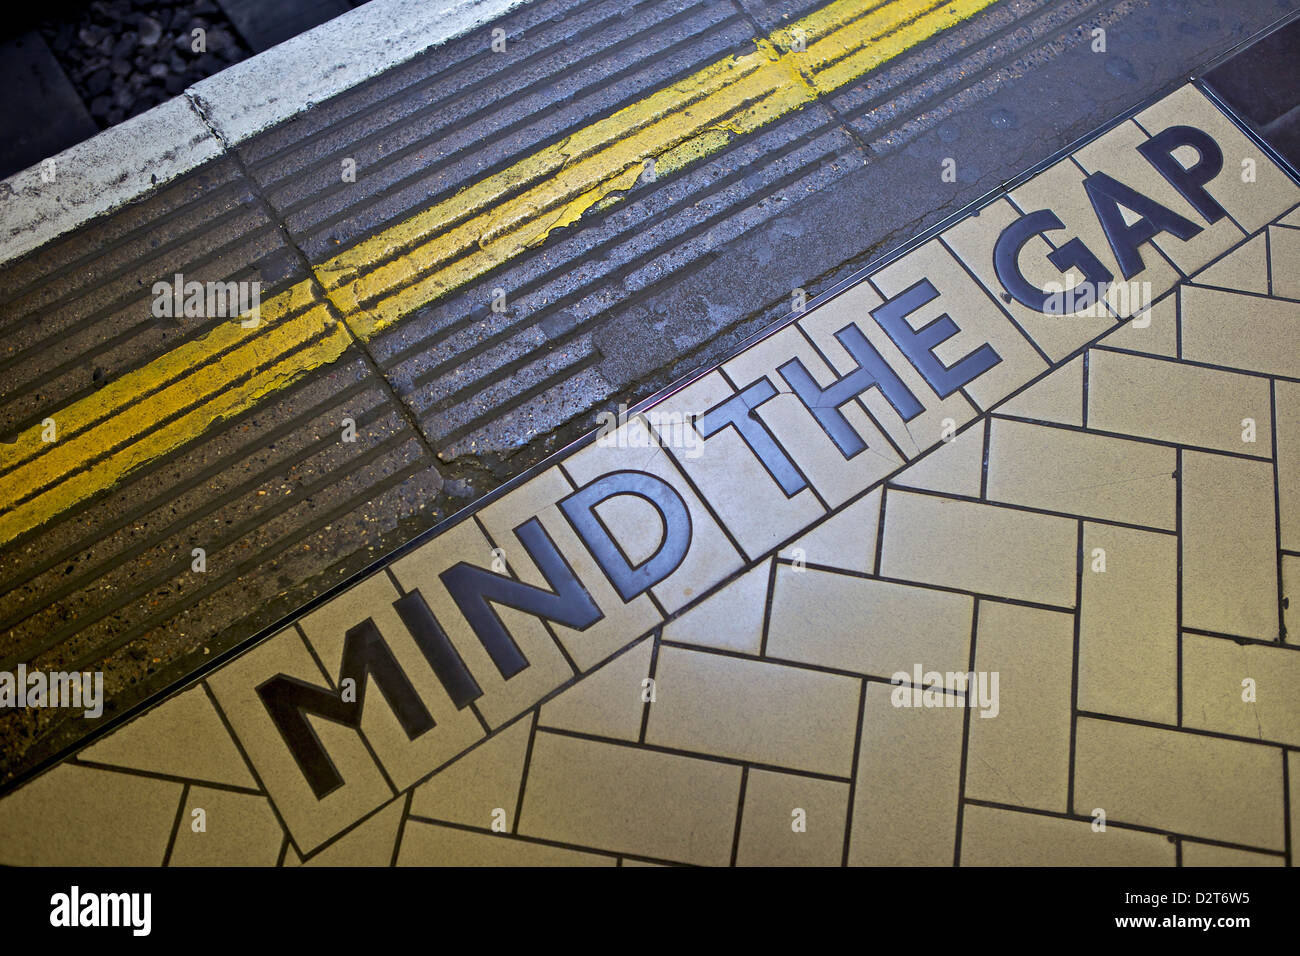 L'ESPRIT L'écart signe sur le bord de la plate-forme, le métro de Londres, Londres, Angleterre, Royaume-Uni, Europe Banque D'Images